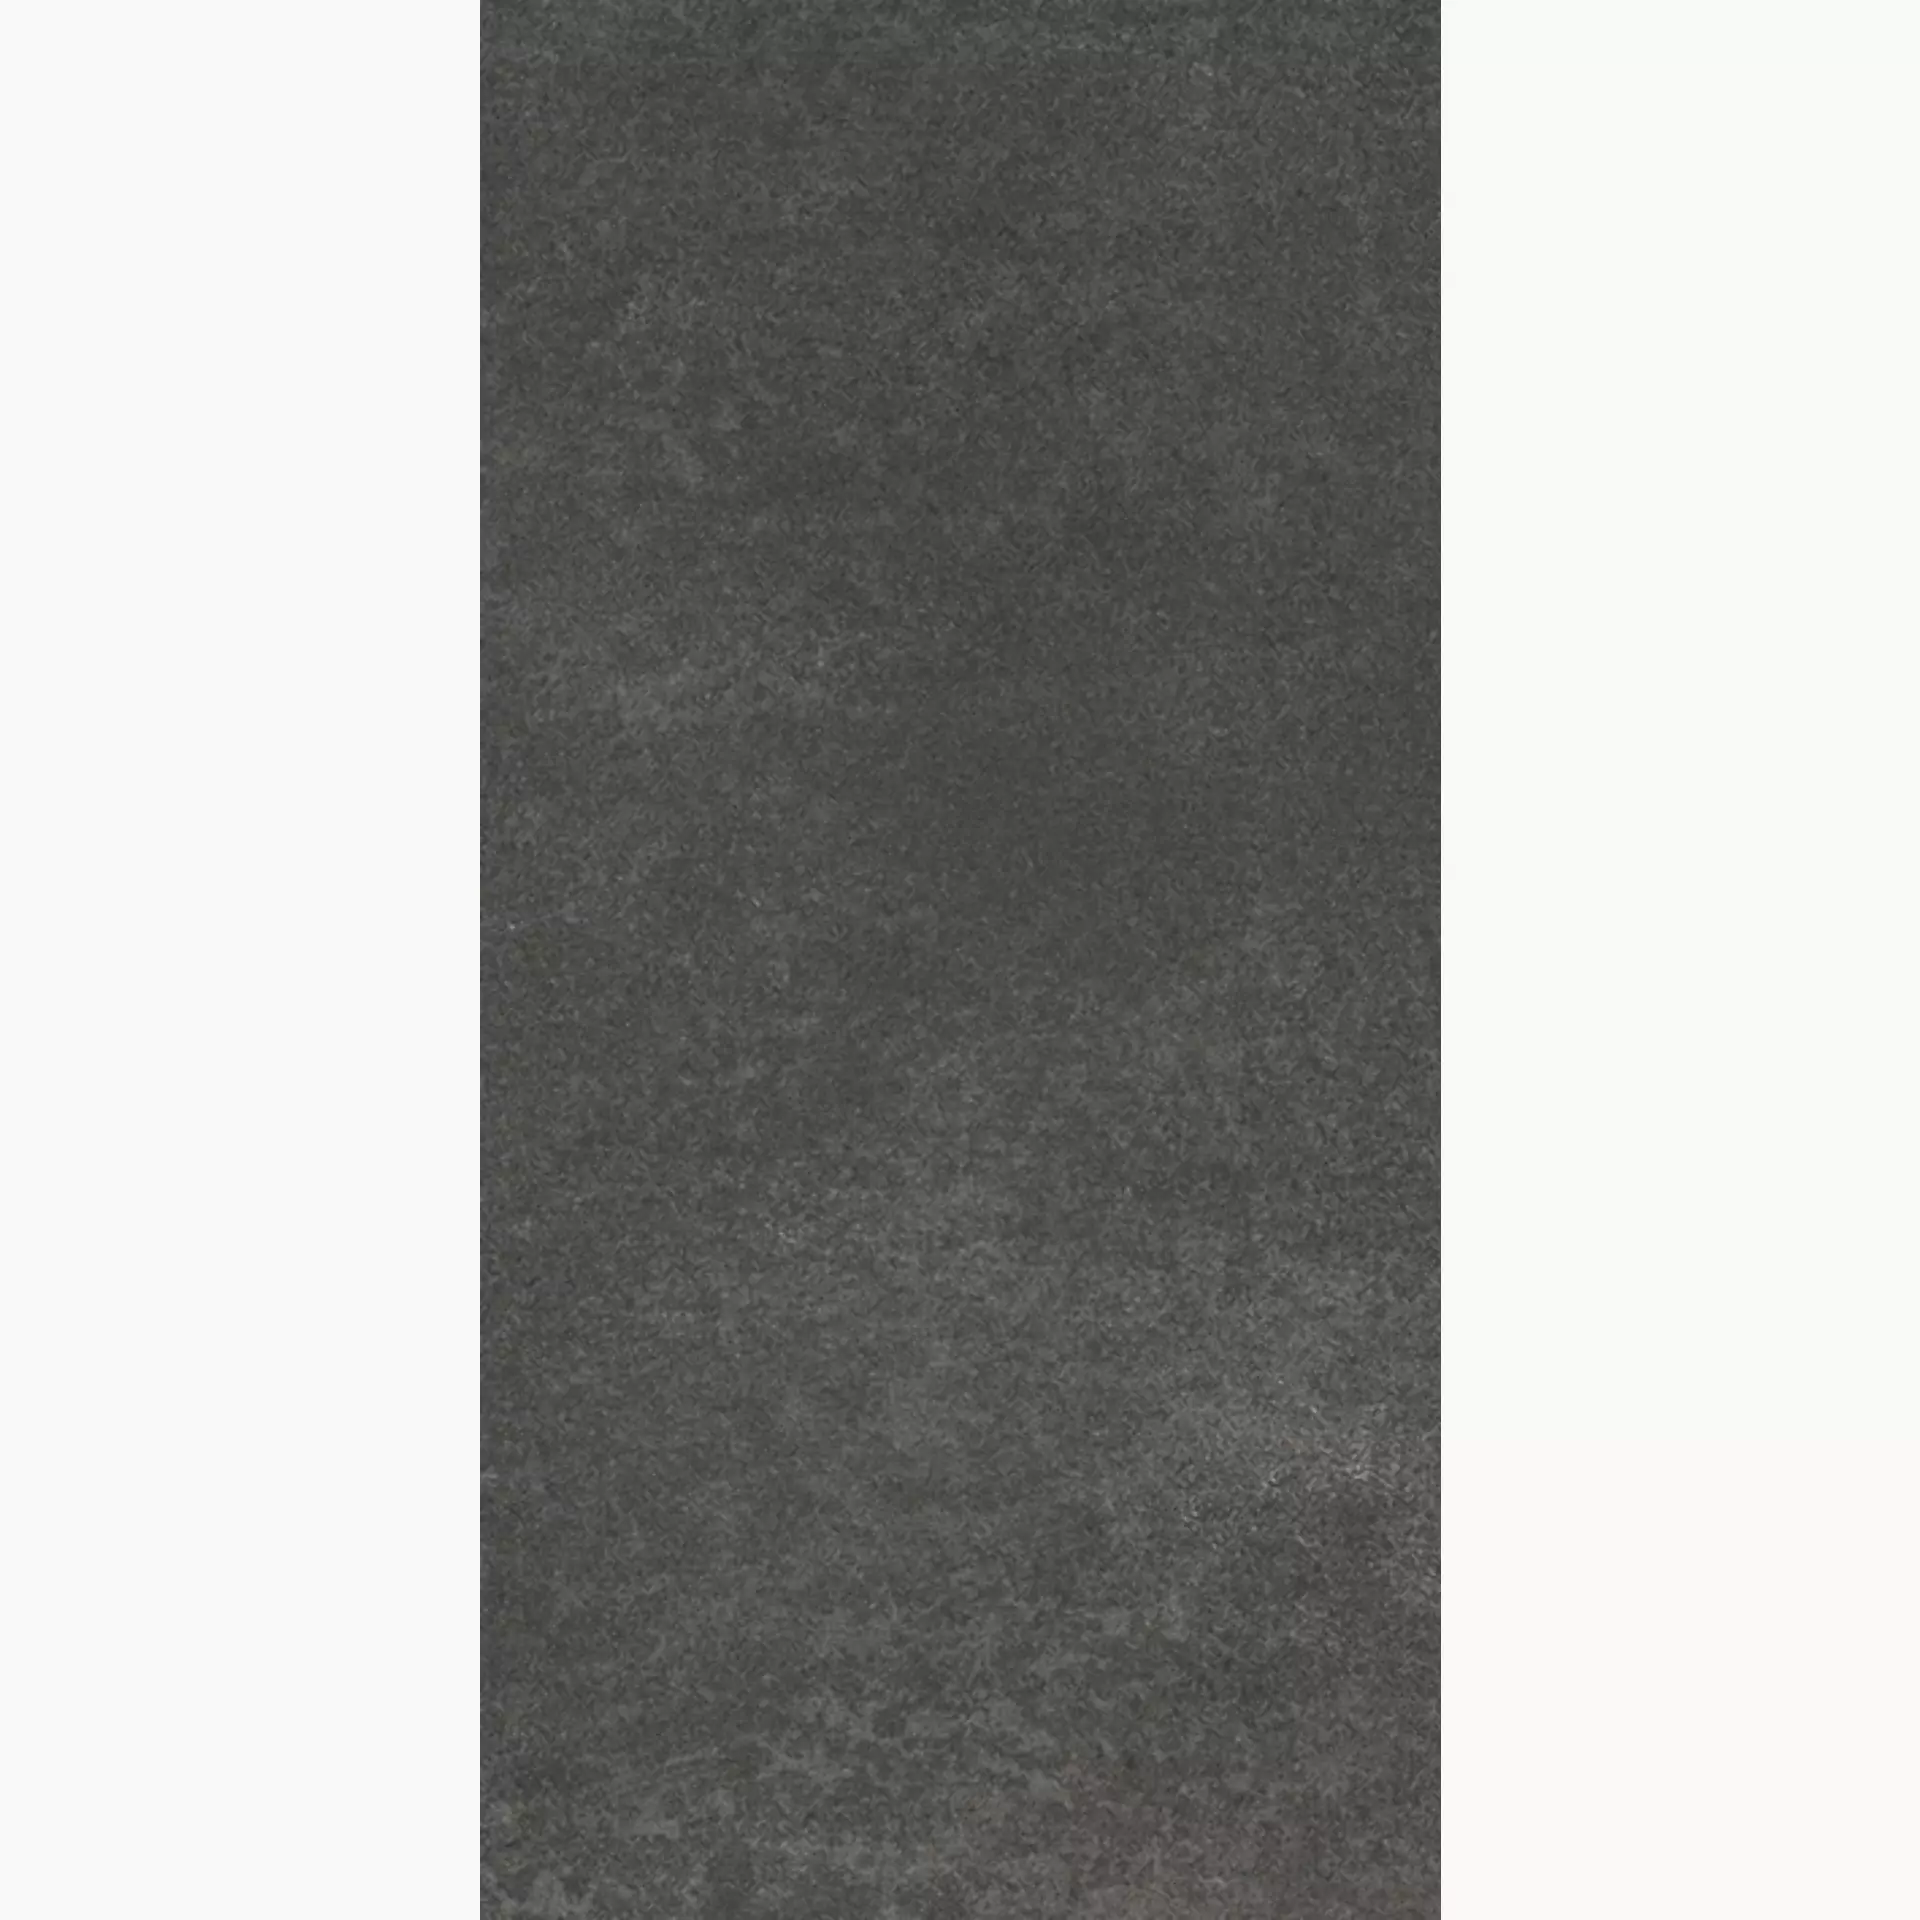 Villeroy & Boch Rocky.Art Basalt Matt 2377-CB90 30x60cm rectified 10mm